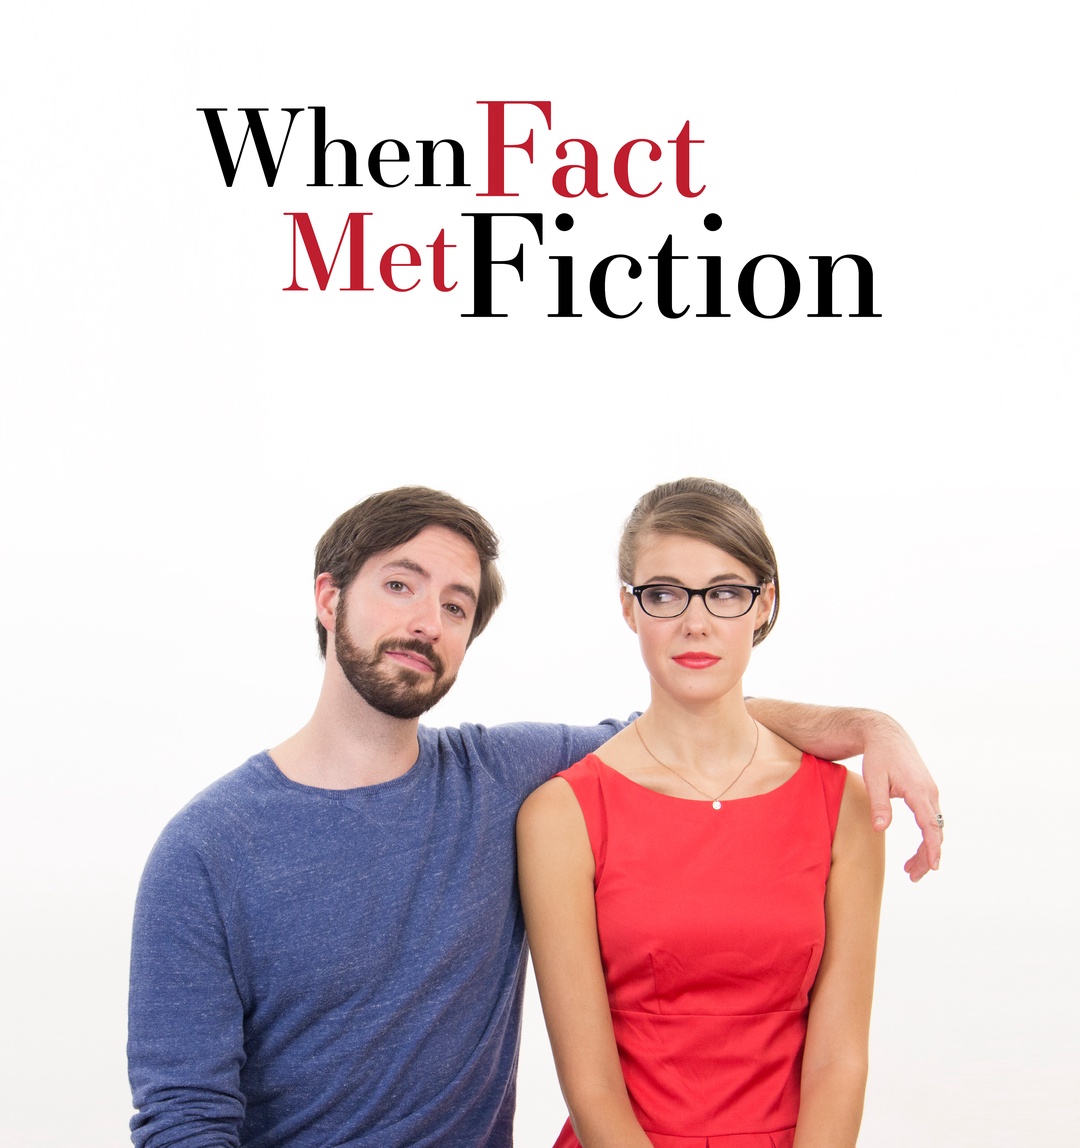 When Fact Met Fiction